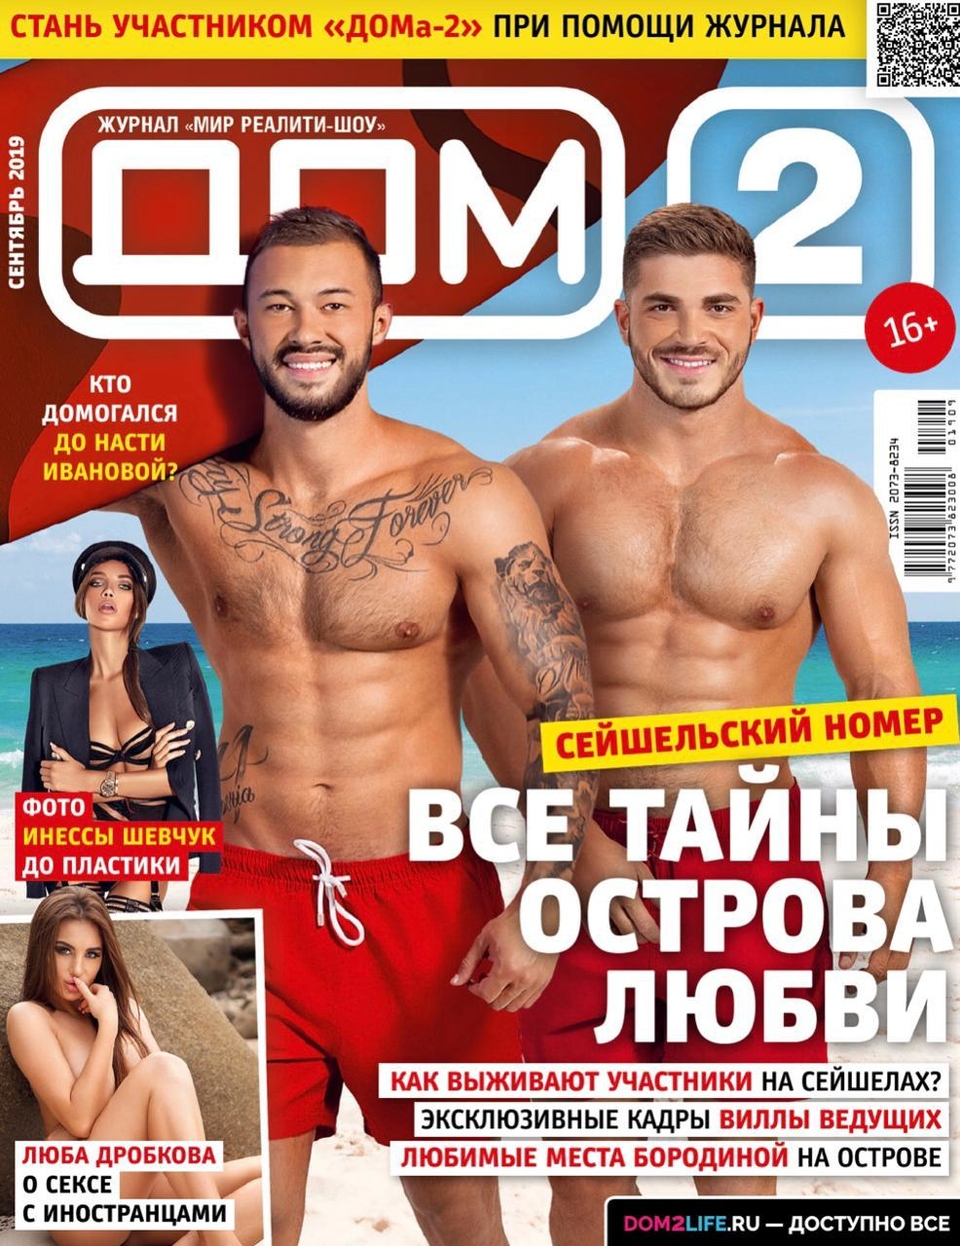 Новый выпуск журнала «ДОМ−2» уже в продаже&nbsp; Фото: журнал «ДОМ−2» 